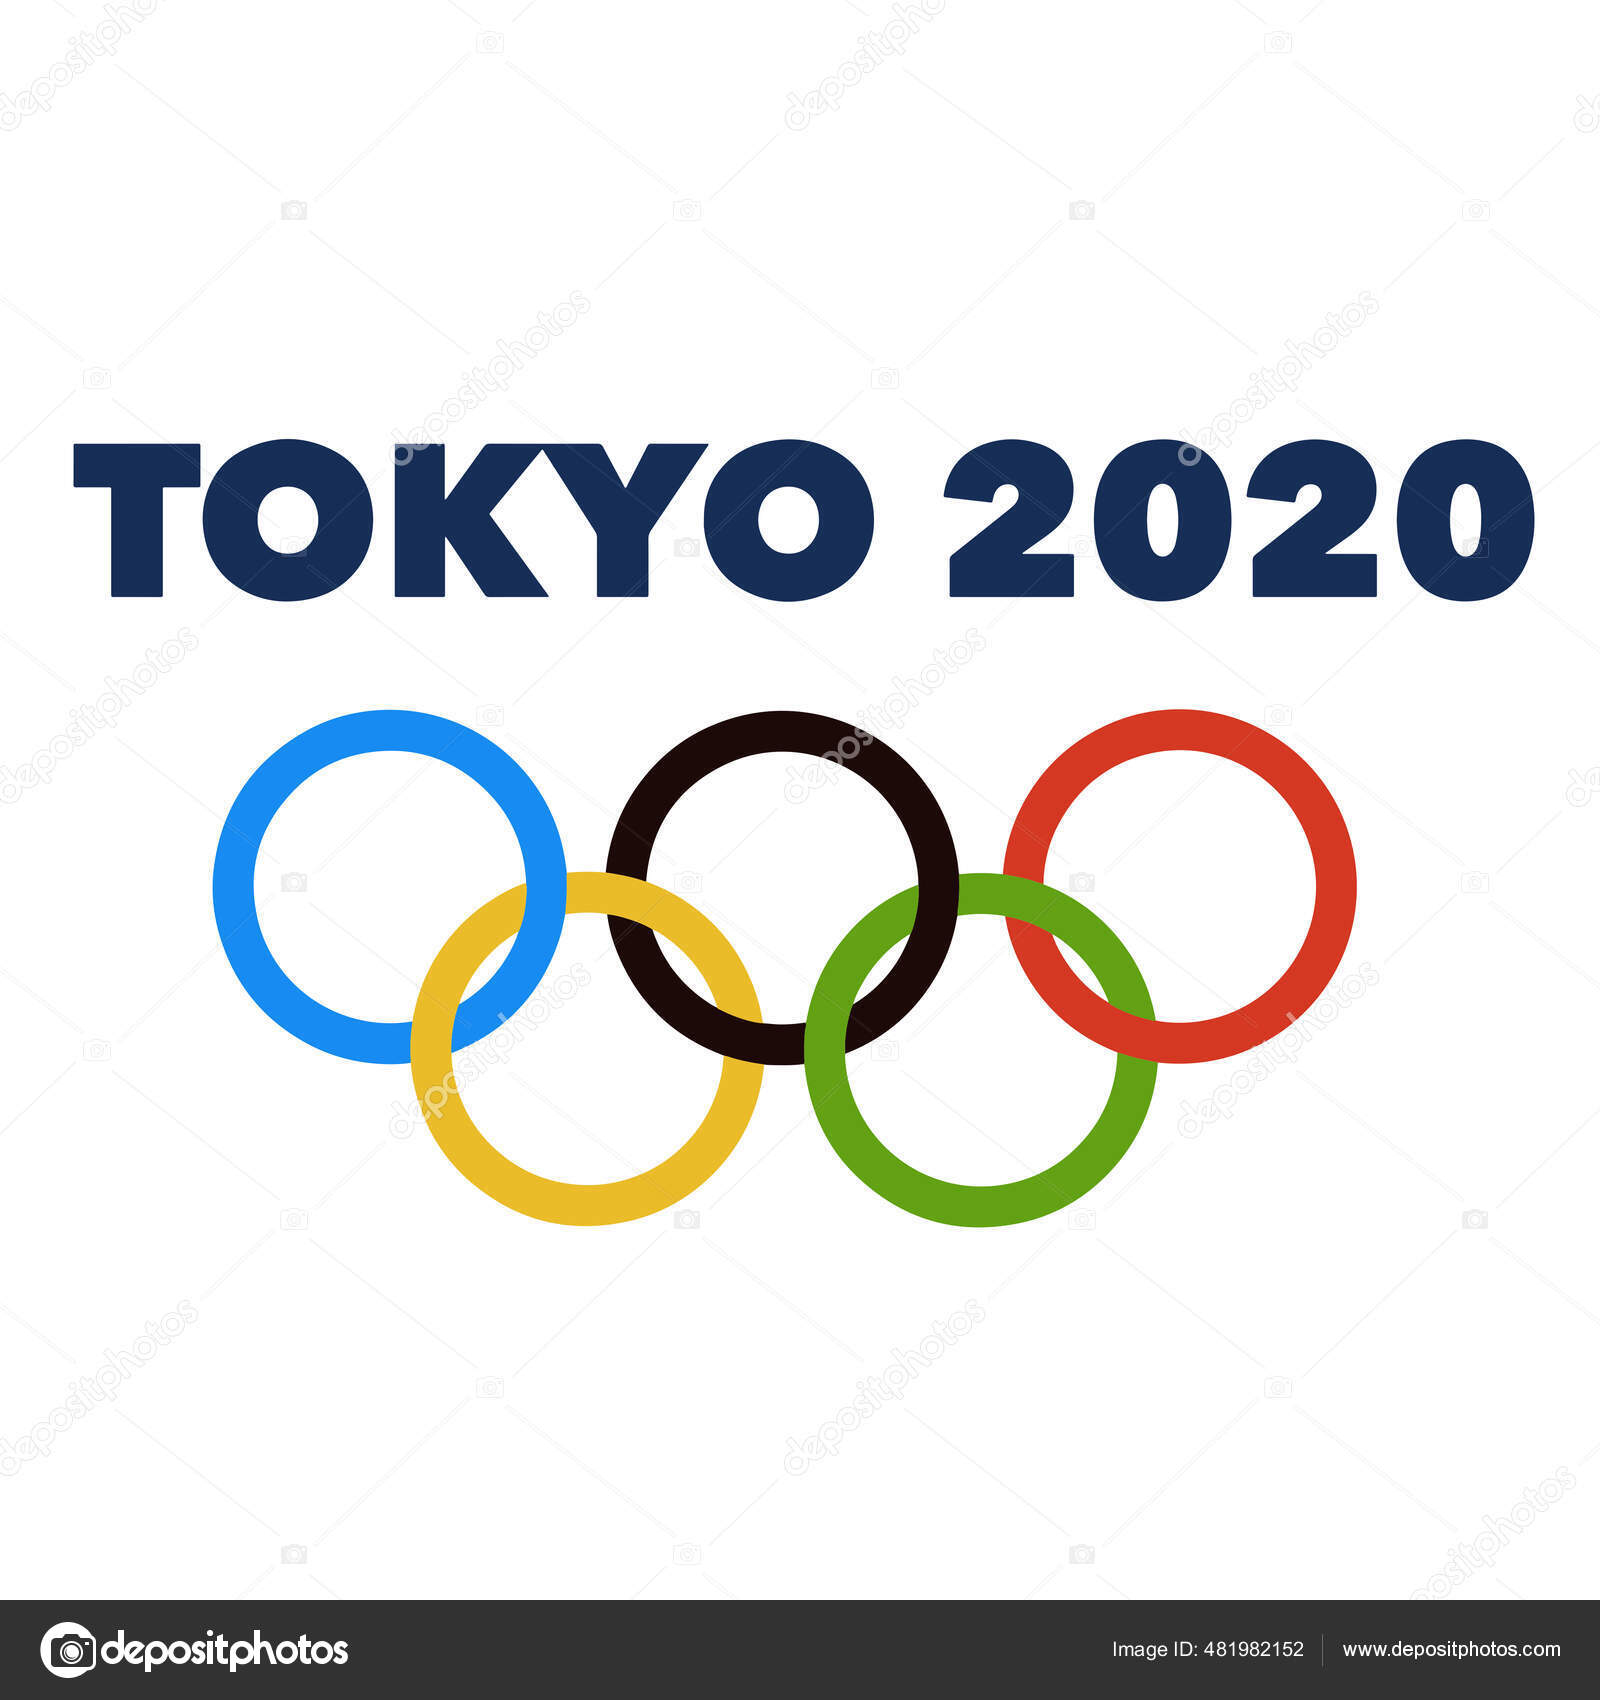 símbolo oficial jogos olímpicos Tóquio 2020 Japão com chama de